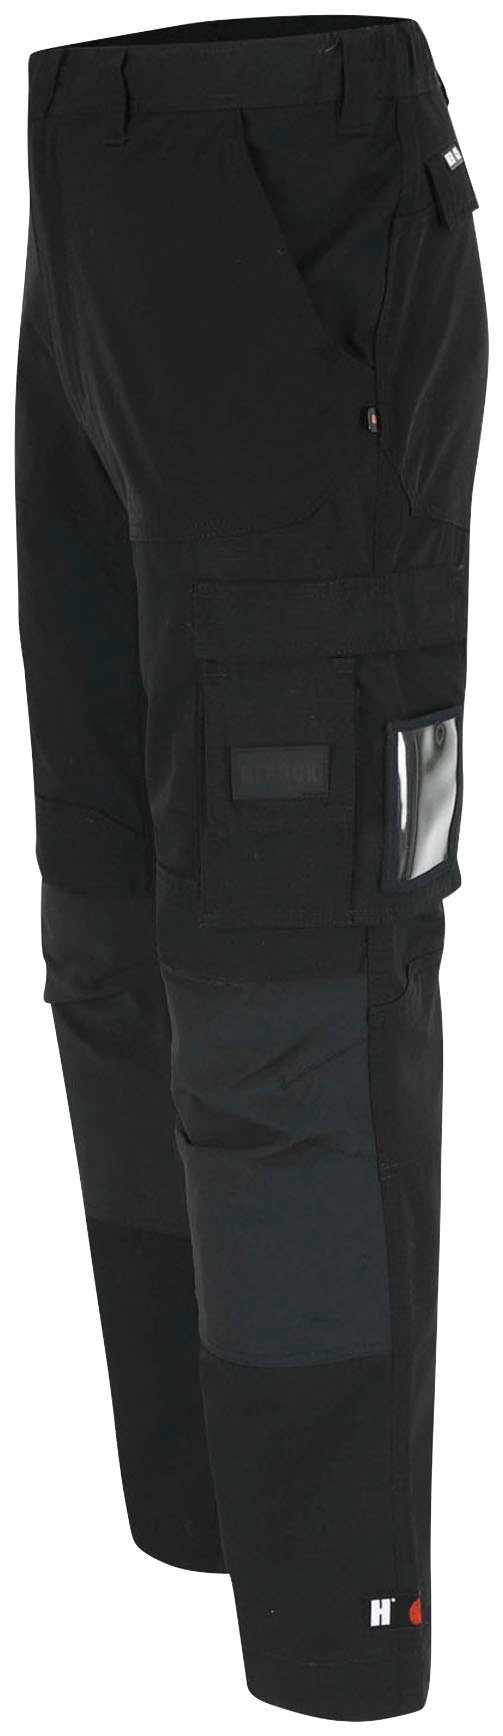 Arbeitshose Herock verdeckter verstärkte Knopf, Multi-Pocket, Hector schwarz 4-Wege-Stretch, Hoses Knietaschen